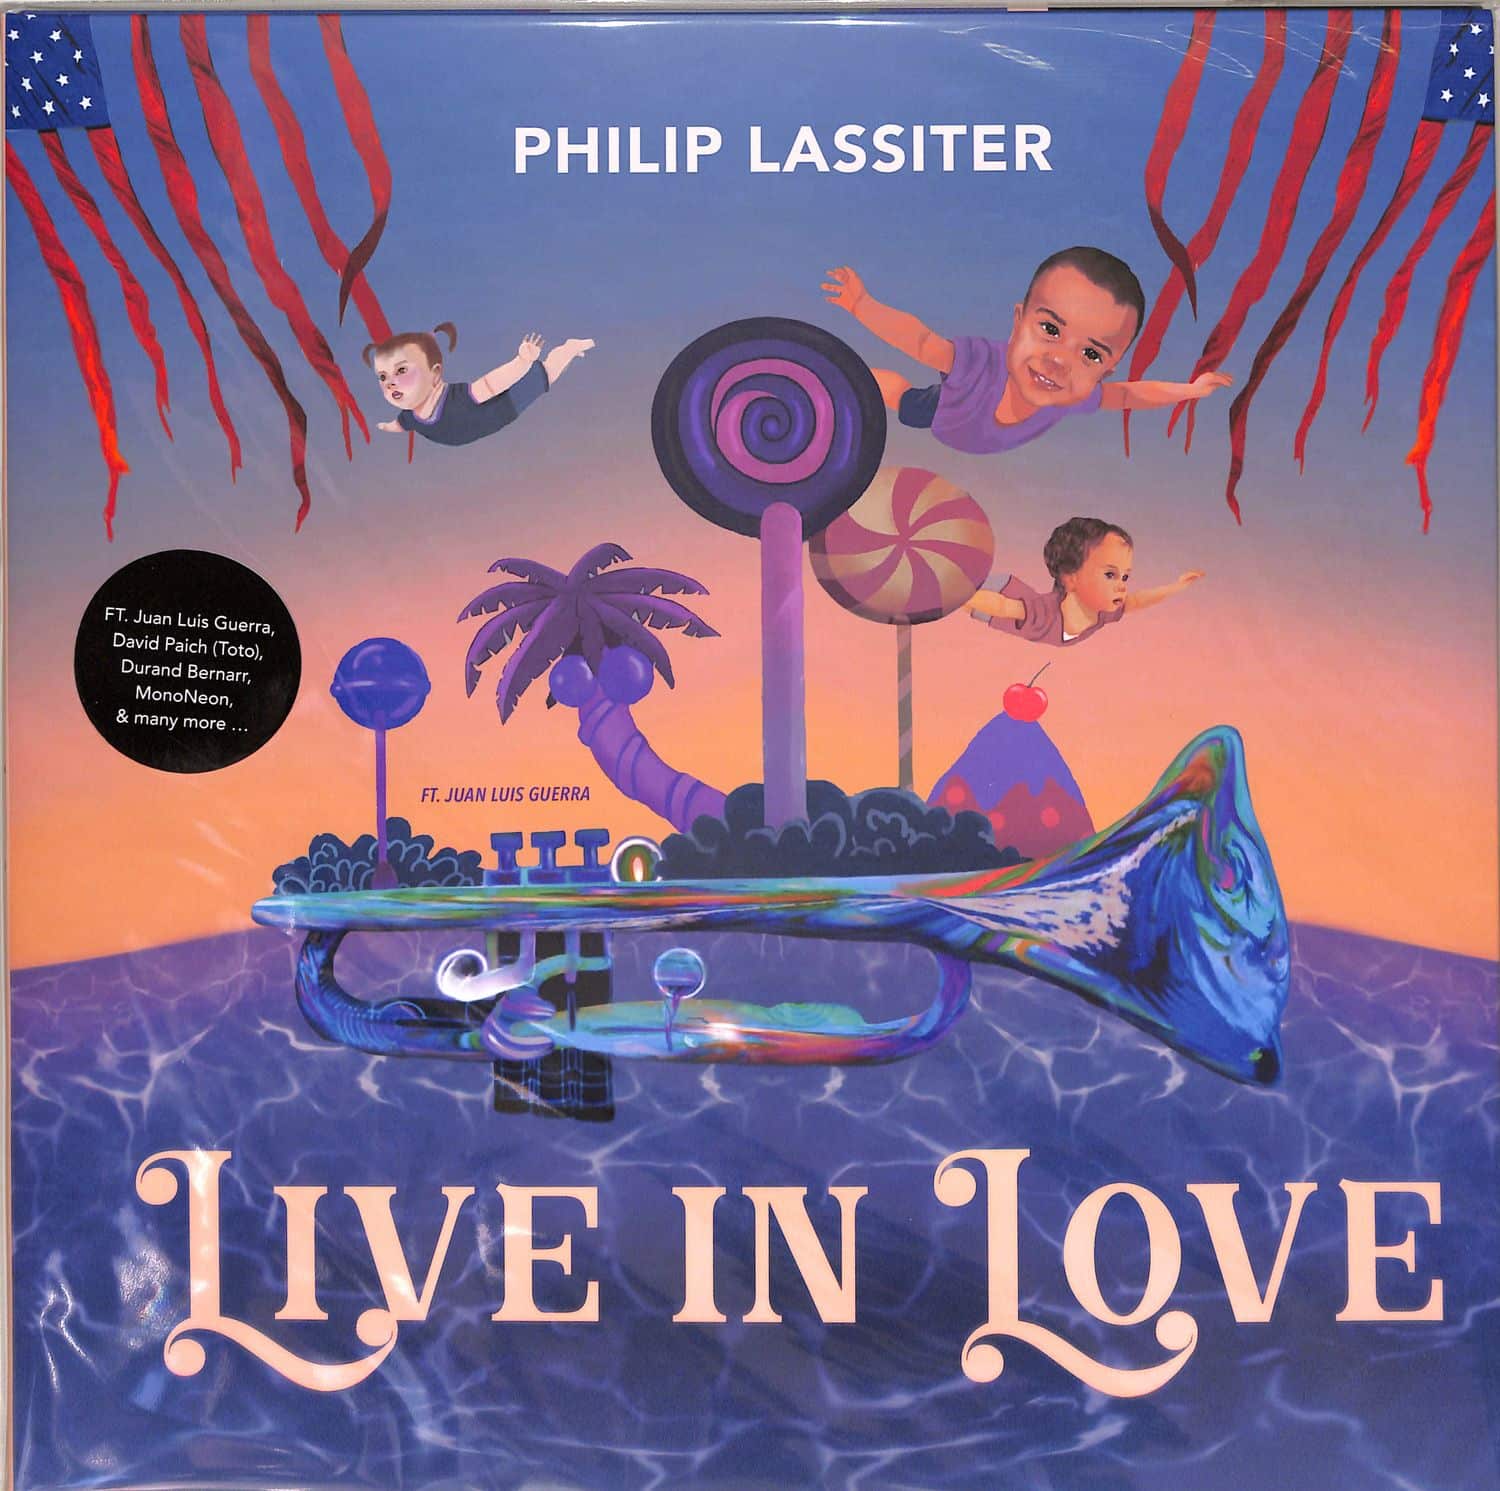 Philip Lassiter - LIVE IN LOVE 